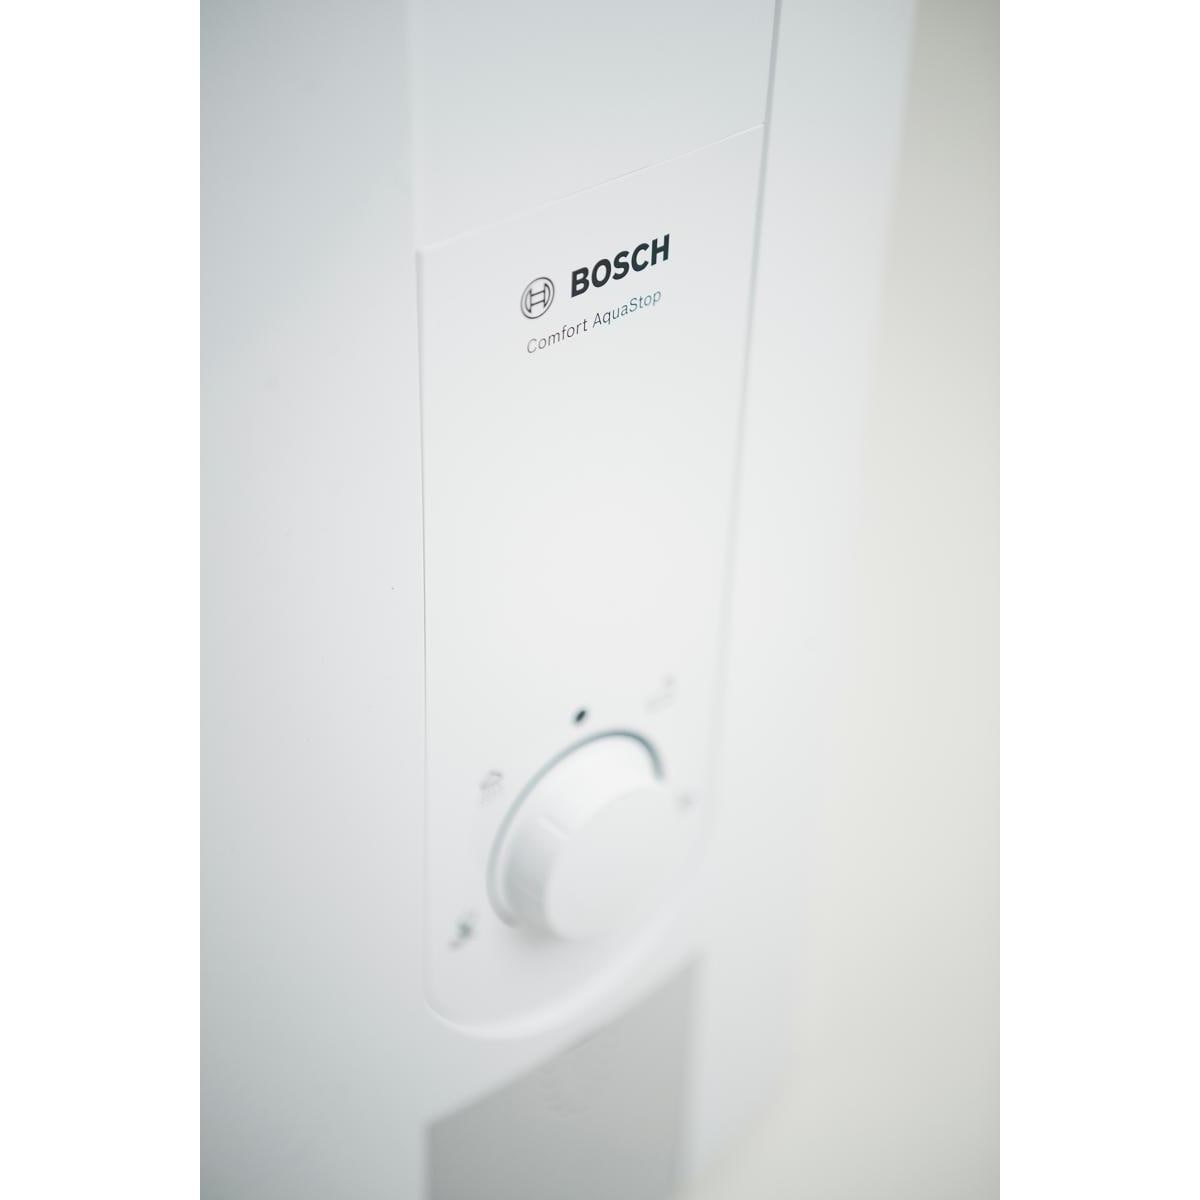 Bosch Tronic Comfort AquaStop Durchlauferhitzer Warmwasserbereiter 24/27kW  Übertischmontage elektronisch weiß